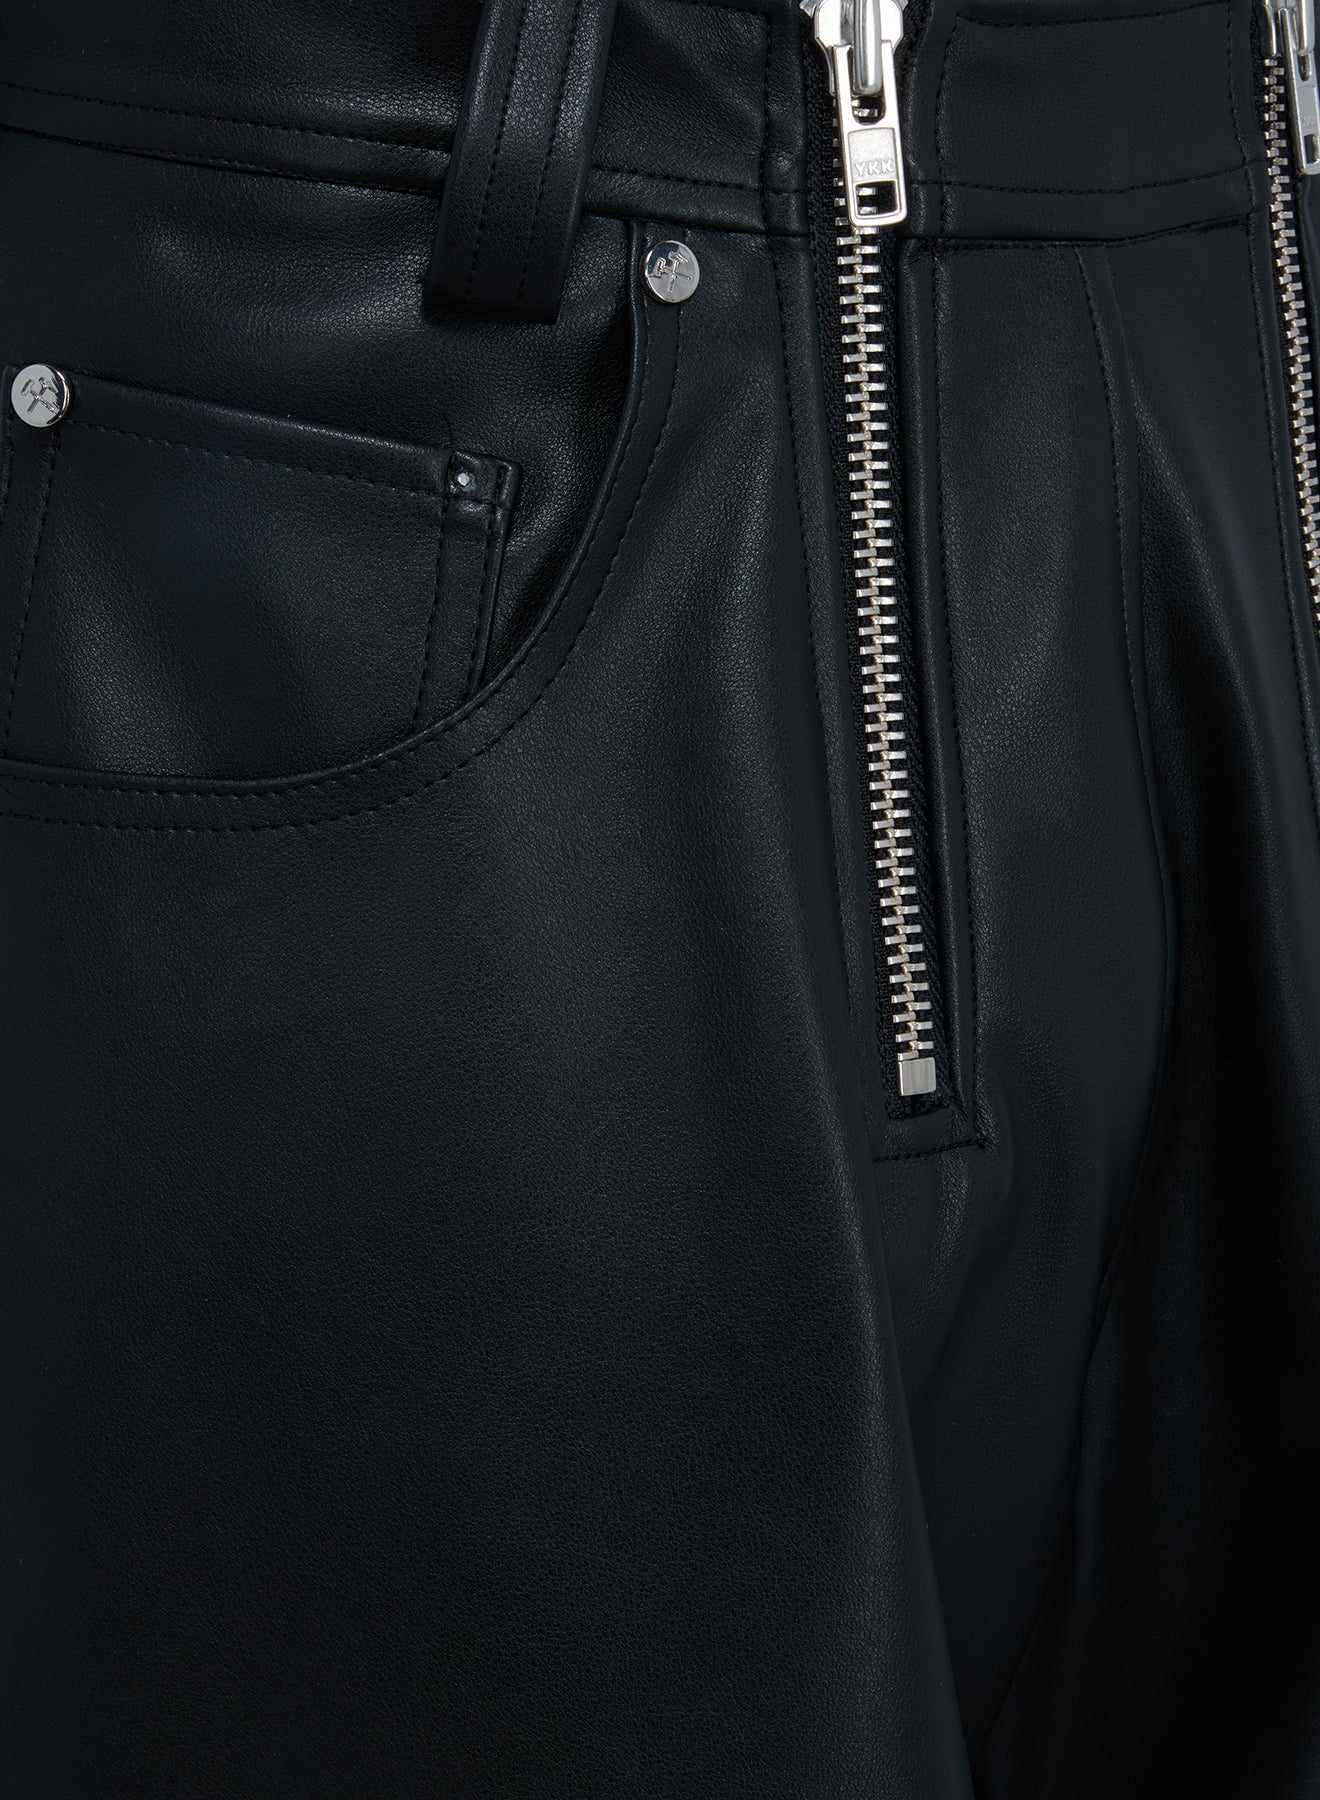 shorts detail zipper